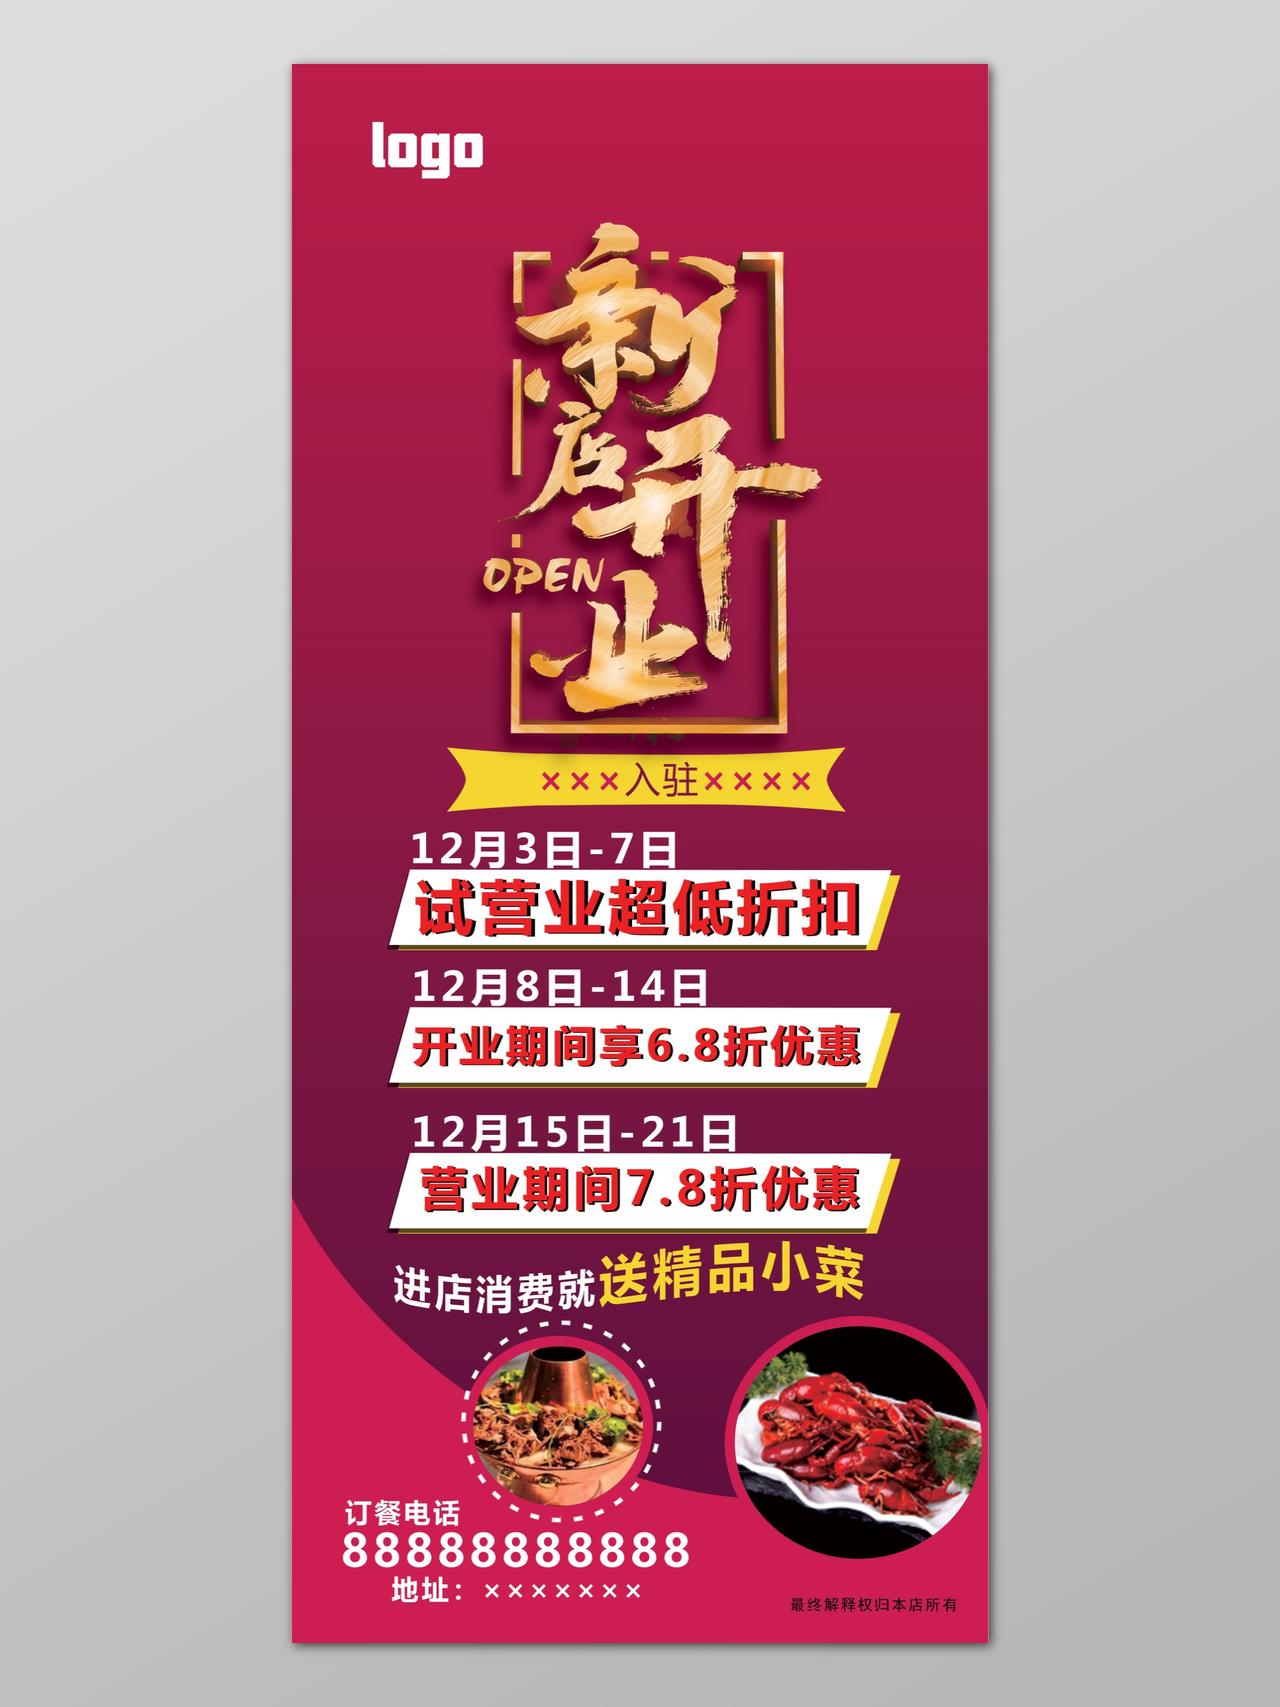 火锅餐饮新店开业优惠入驻促销活动红色海报展板设计